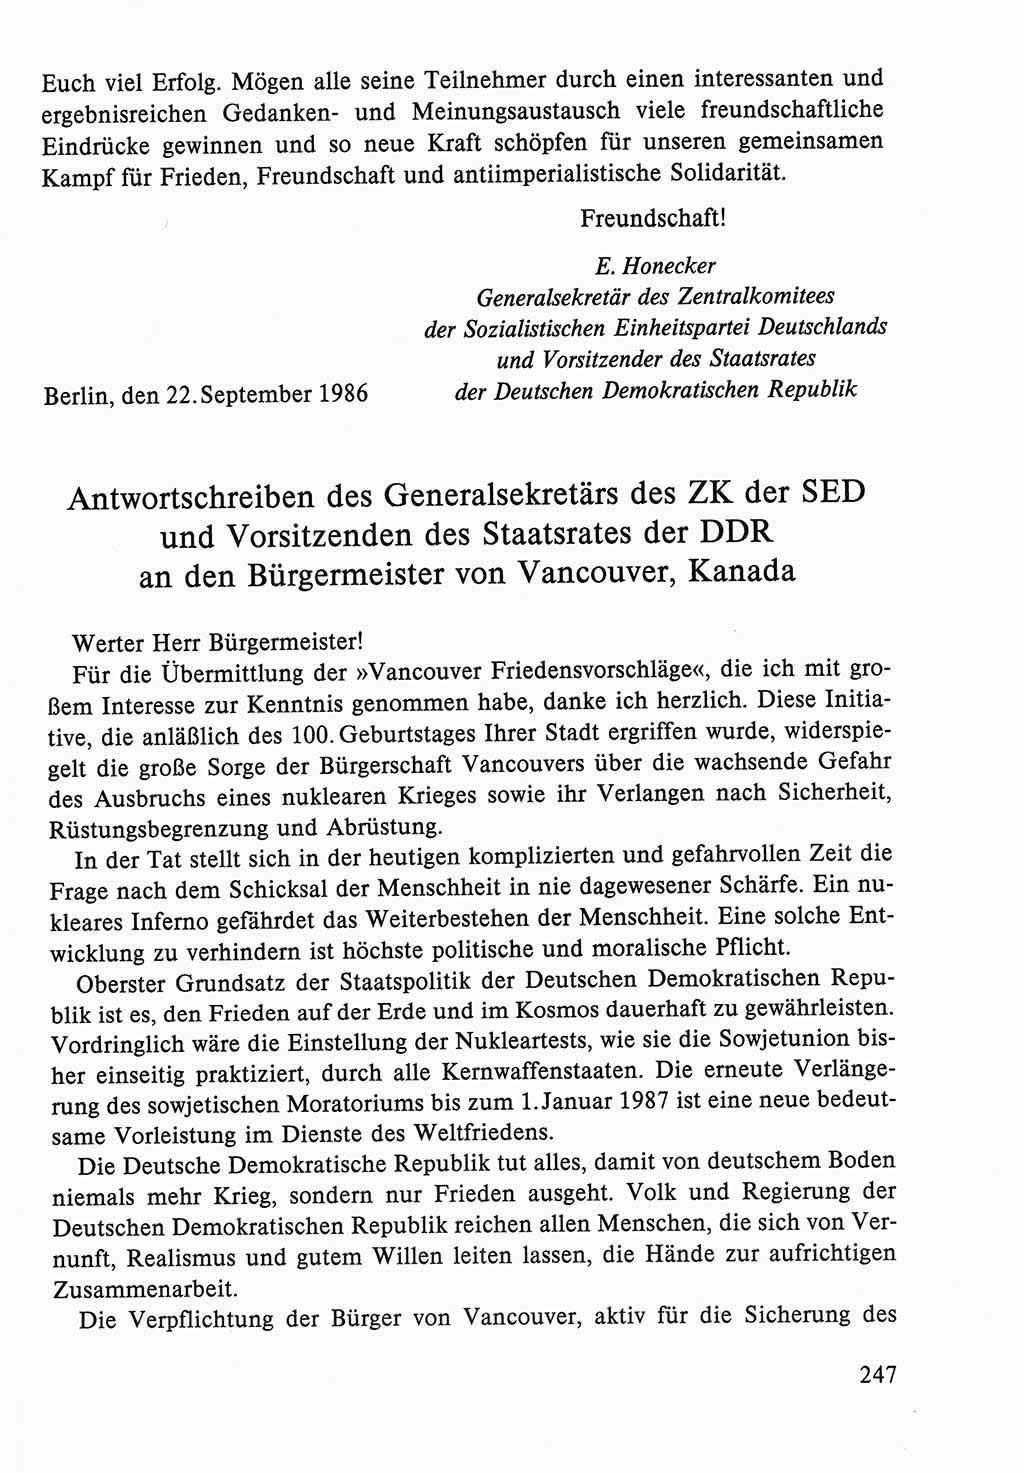 Dokumente der Sozialistischen Einheitspartei Deutschlands (SED) [Deutsche Demokratische Republik (DDR)] 1986-1987, Seite 247 (Dok. SED DDR 1986-1987, S. 247)